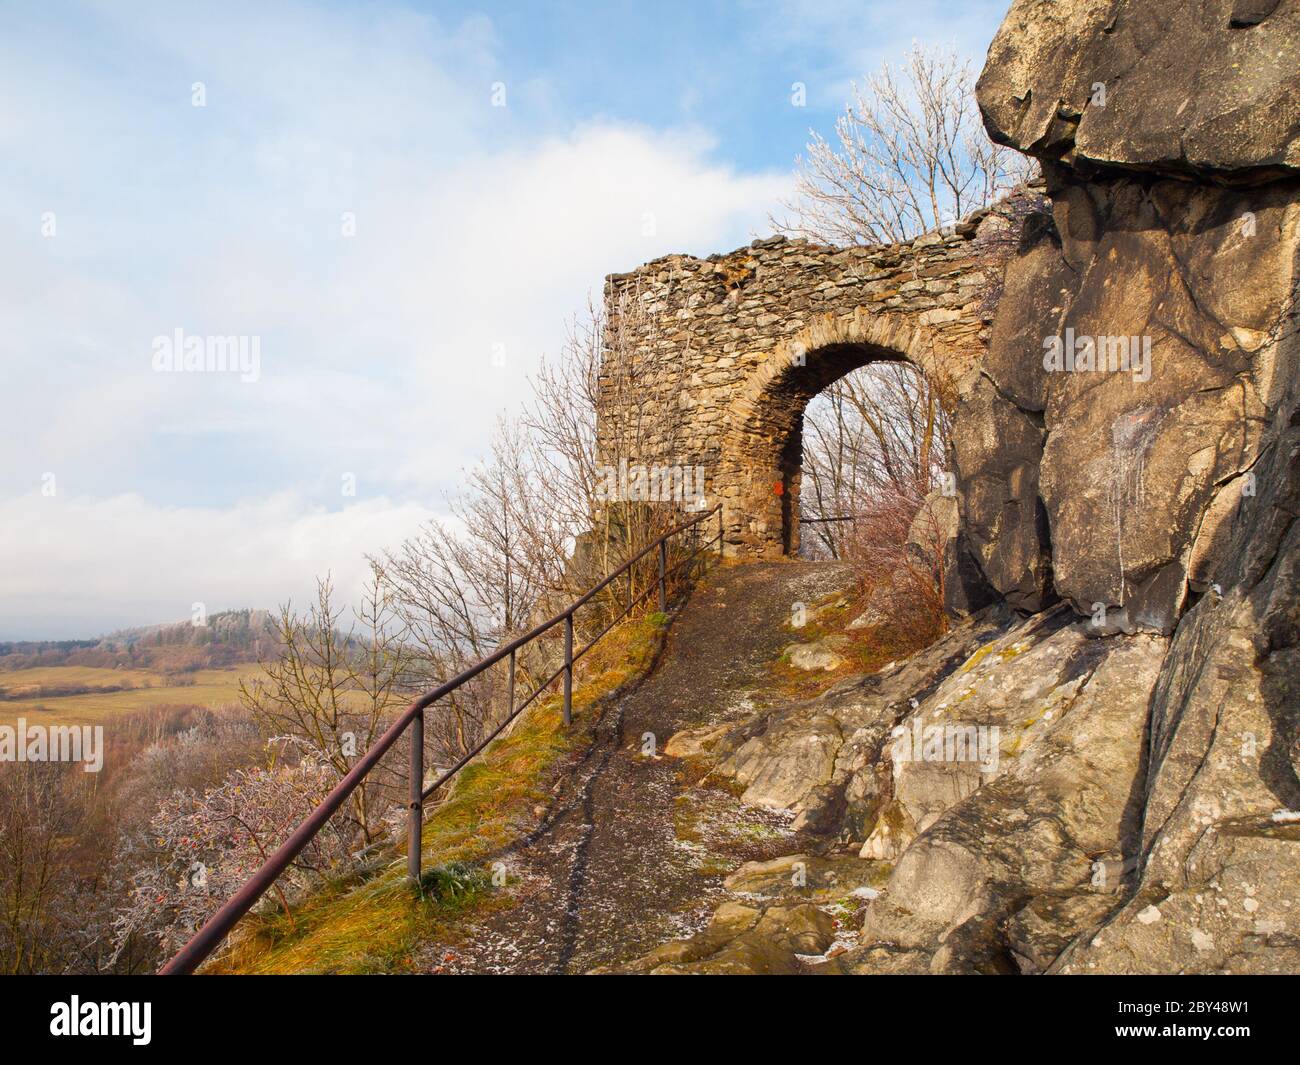 Porta d'ingresso alle rovine medievali del castello di Andelska Hora, aka Engelsburg, vicino a Karlovy Vary, Repubblica Ceca, Europa. Sole e freezy giorno d'inverno. Foto Stock